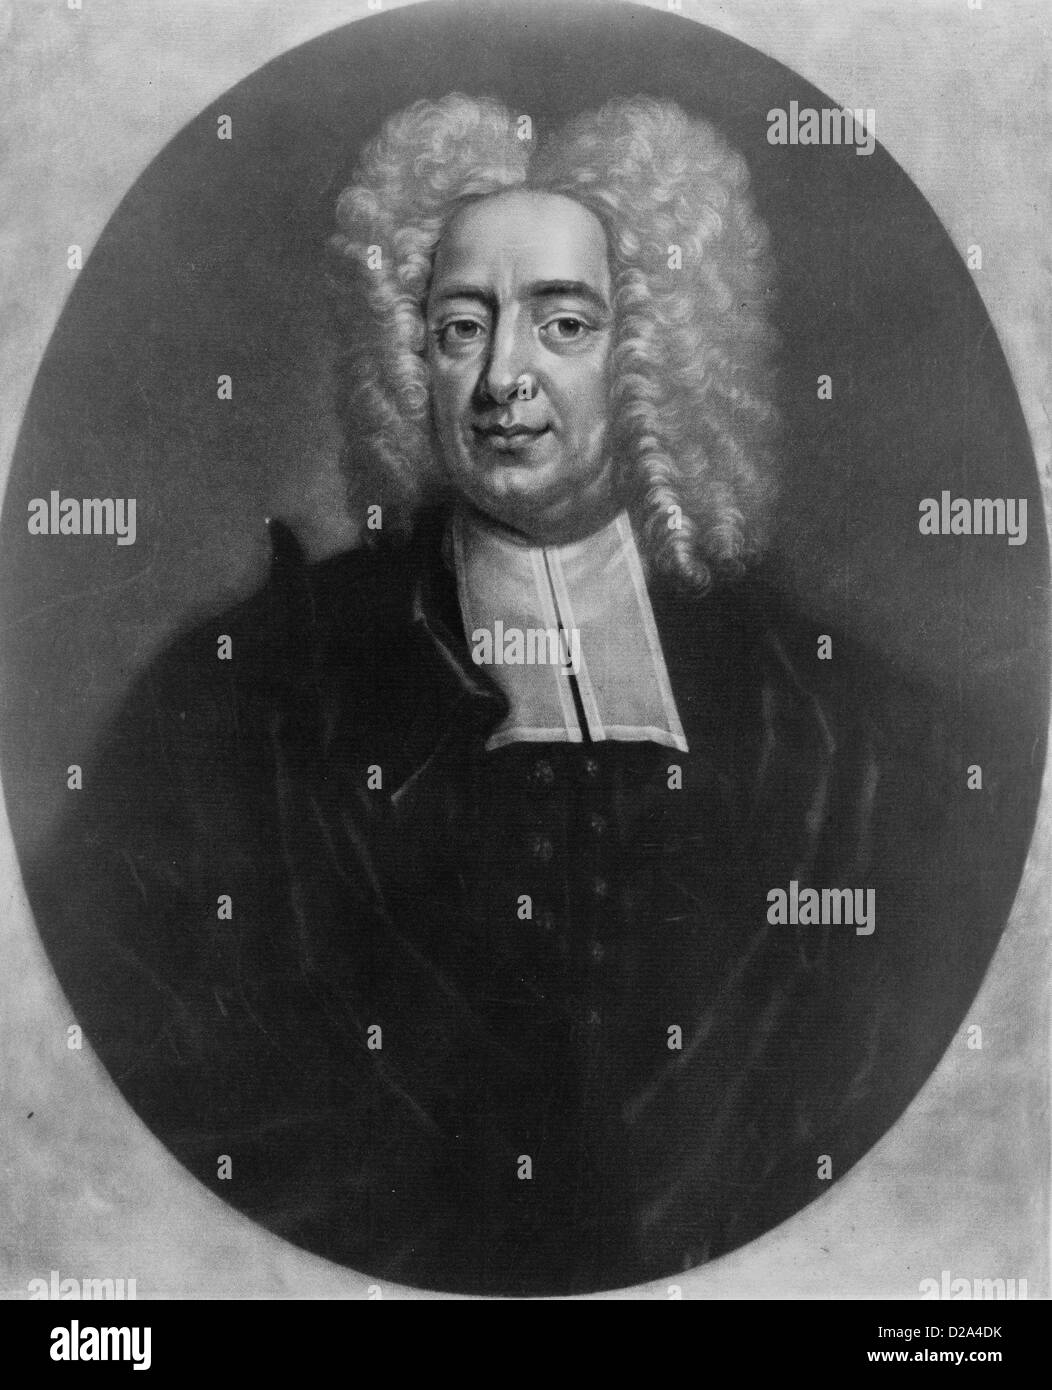 Cottonus Matherus S Theologiae Doctor Regia Societatis Londonensis .. Aetatis Suae Lxv Mdccxxvii [1727] / P Pelham Ad Vivum Foto de stock